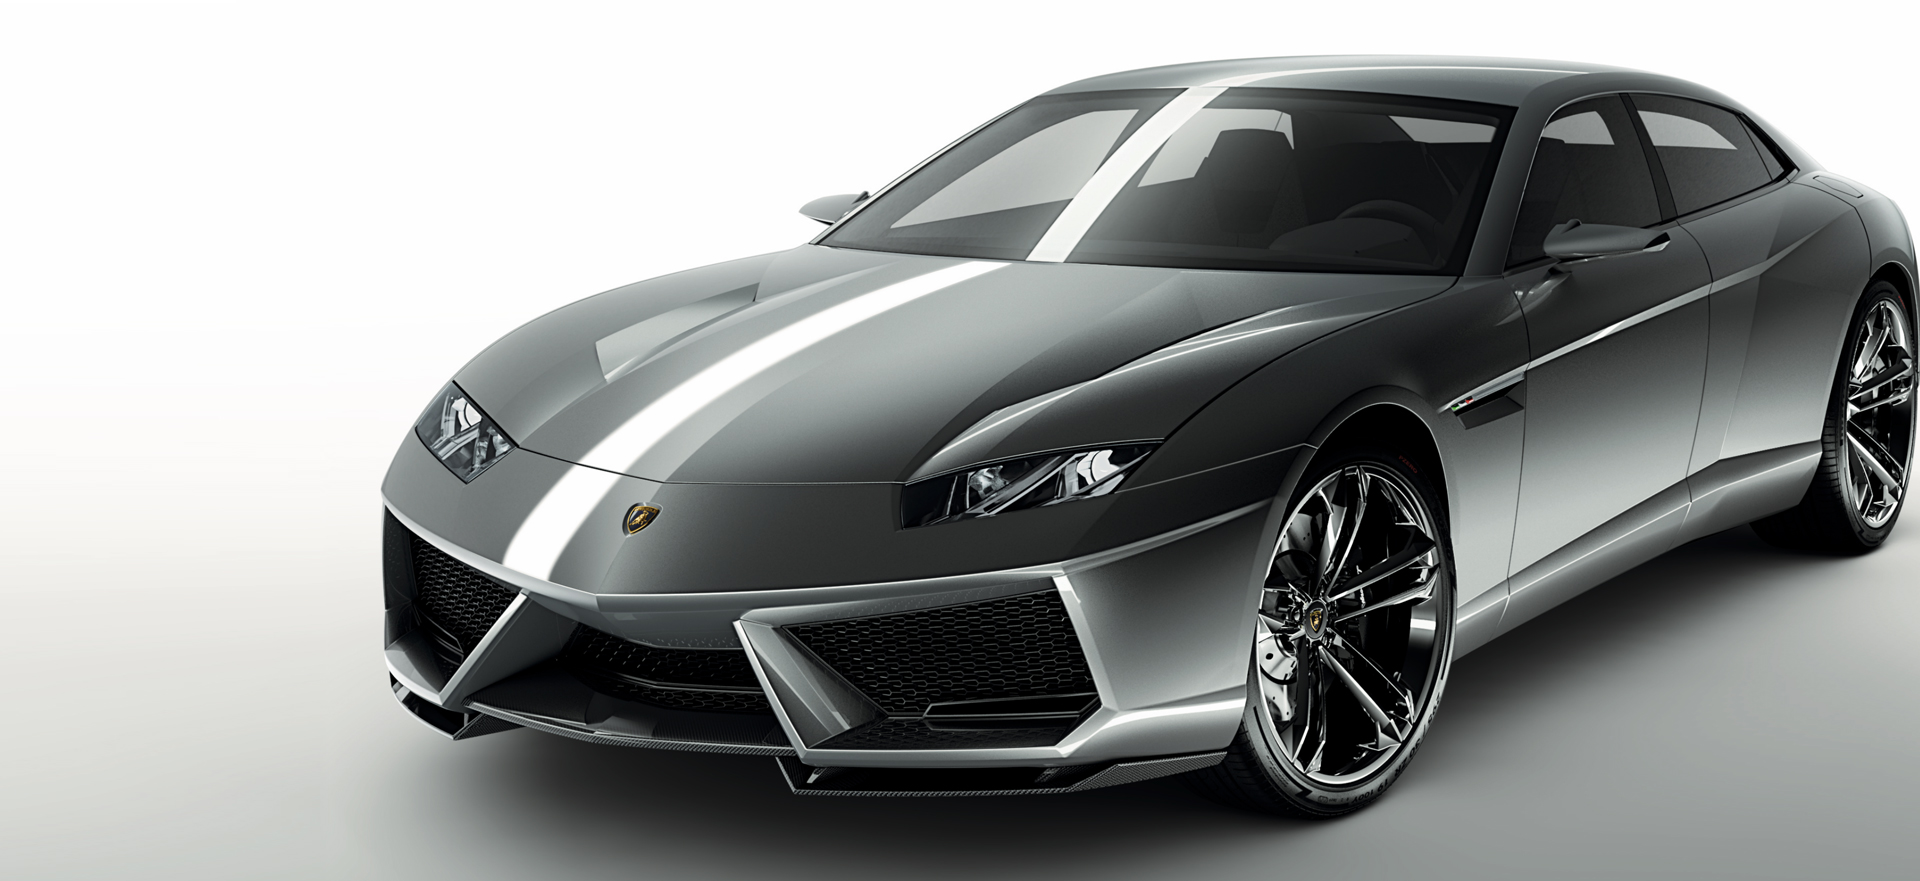 Lamborghini Concepts - Models 